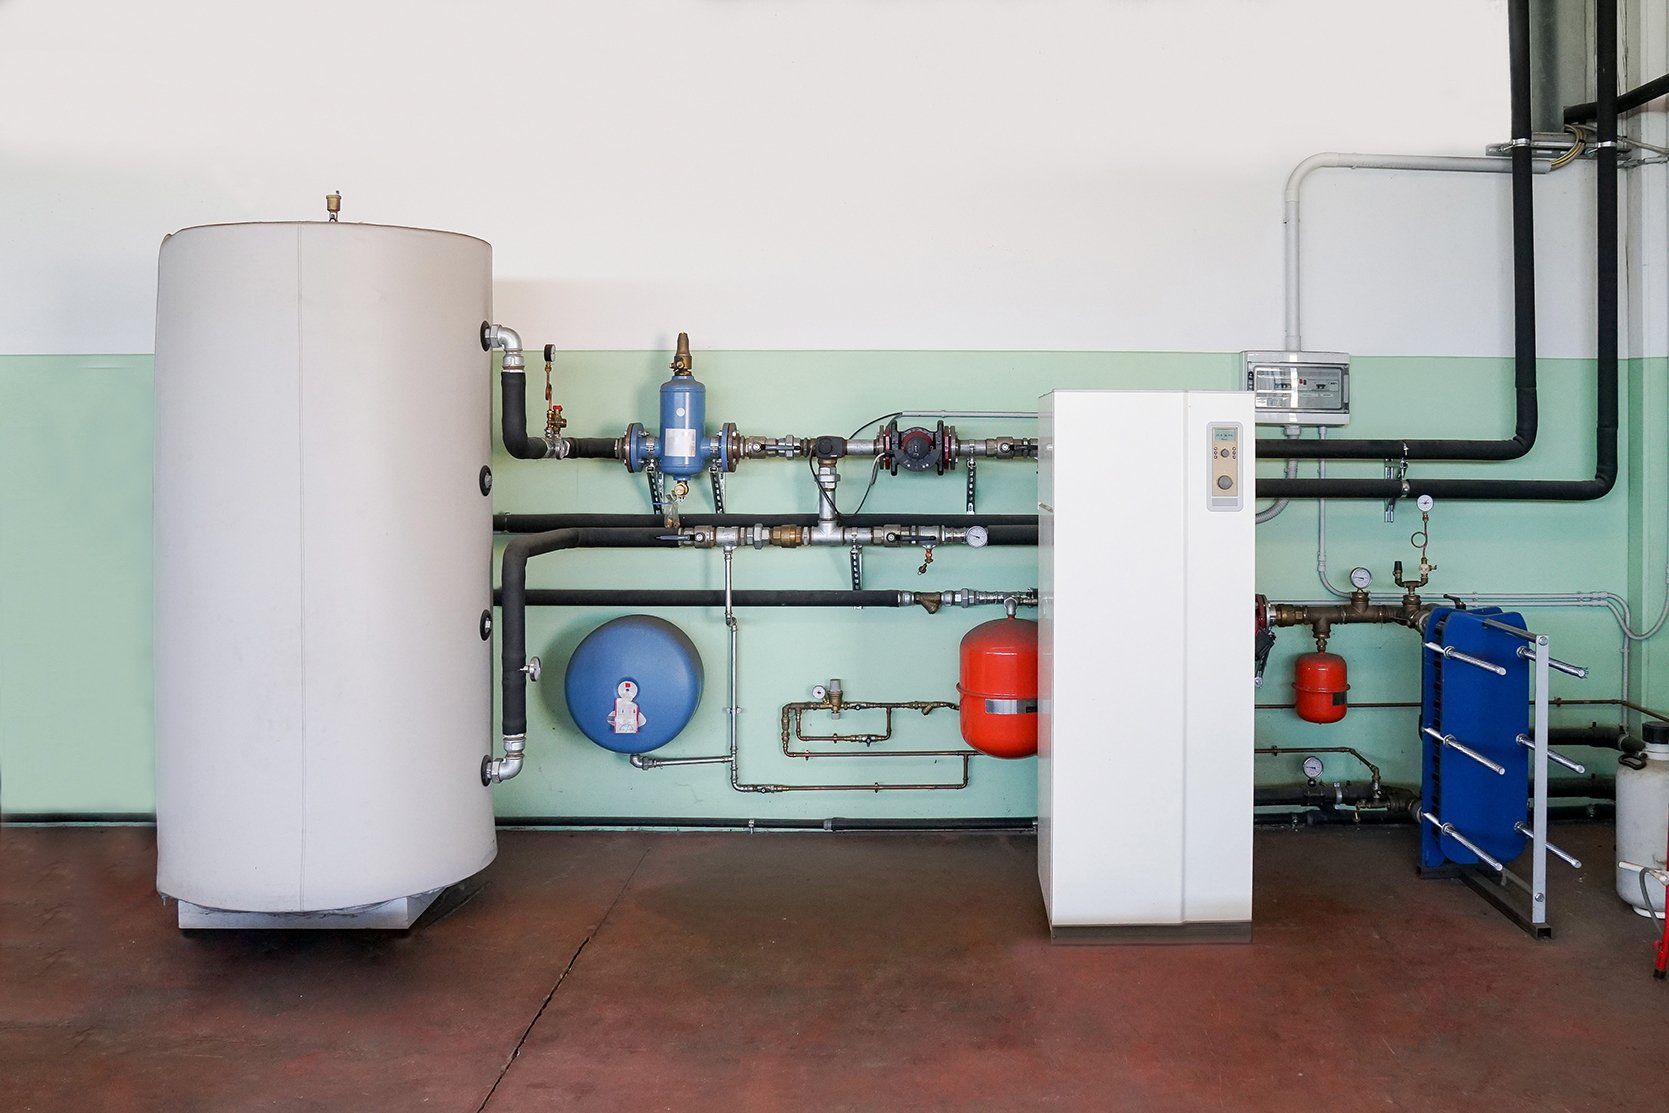 geothermal heat pump heating boiler room